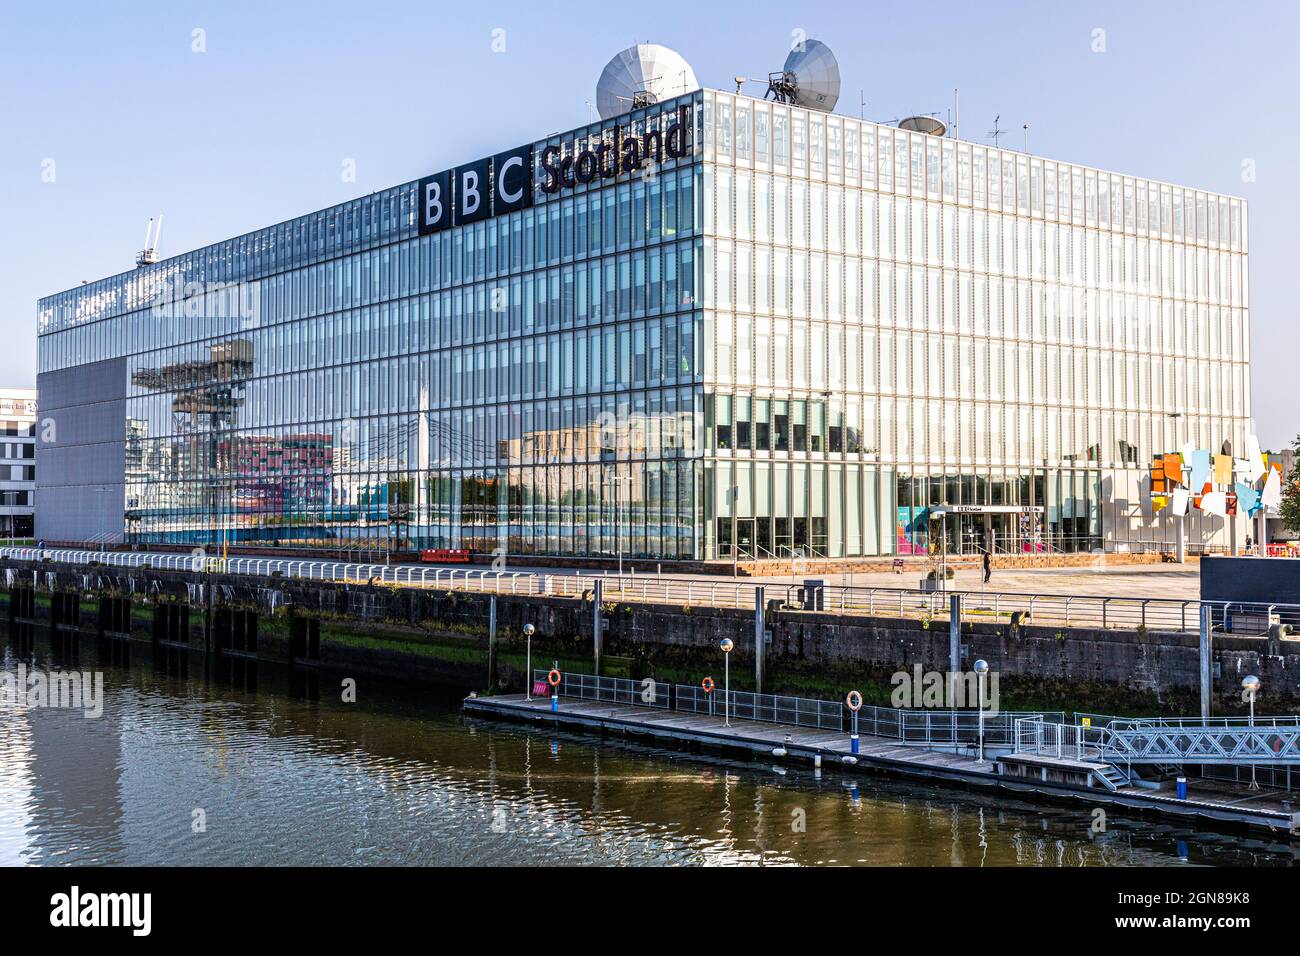 L'edificio della BBC Scotland accanto a Bells Bridge sul fiume Clyde a Glasgow, Scozia Regno Unito Foto Stock